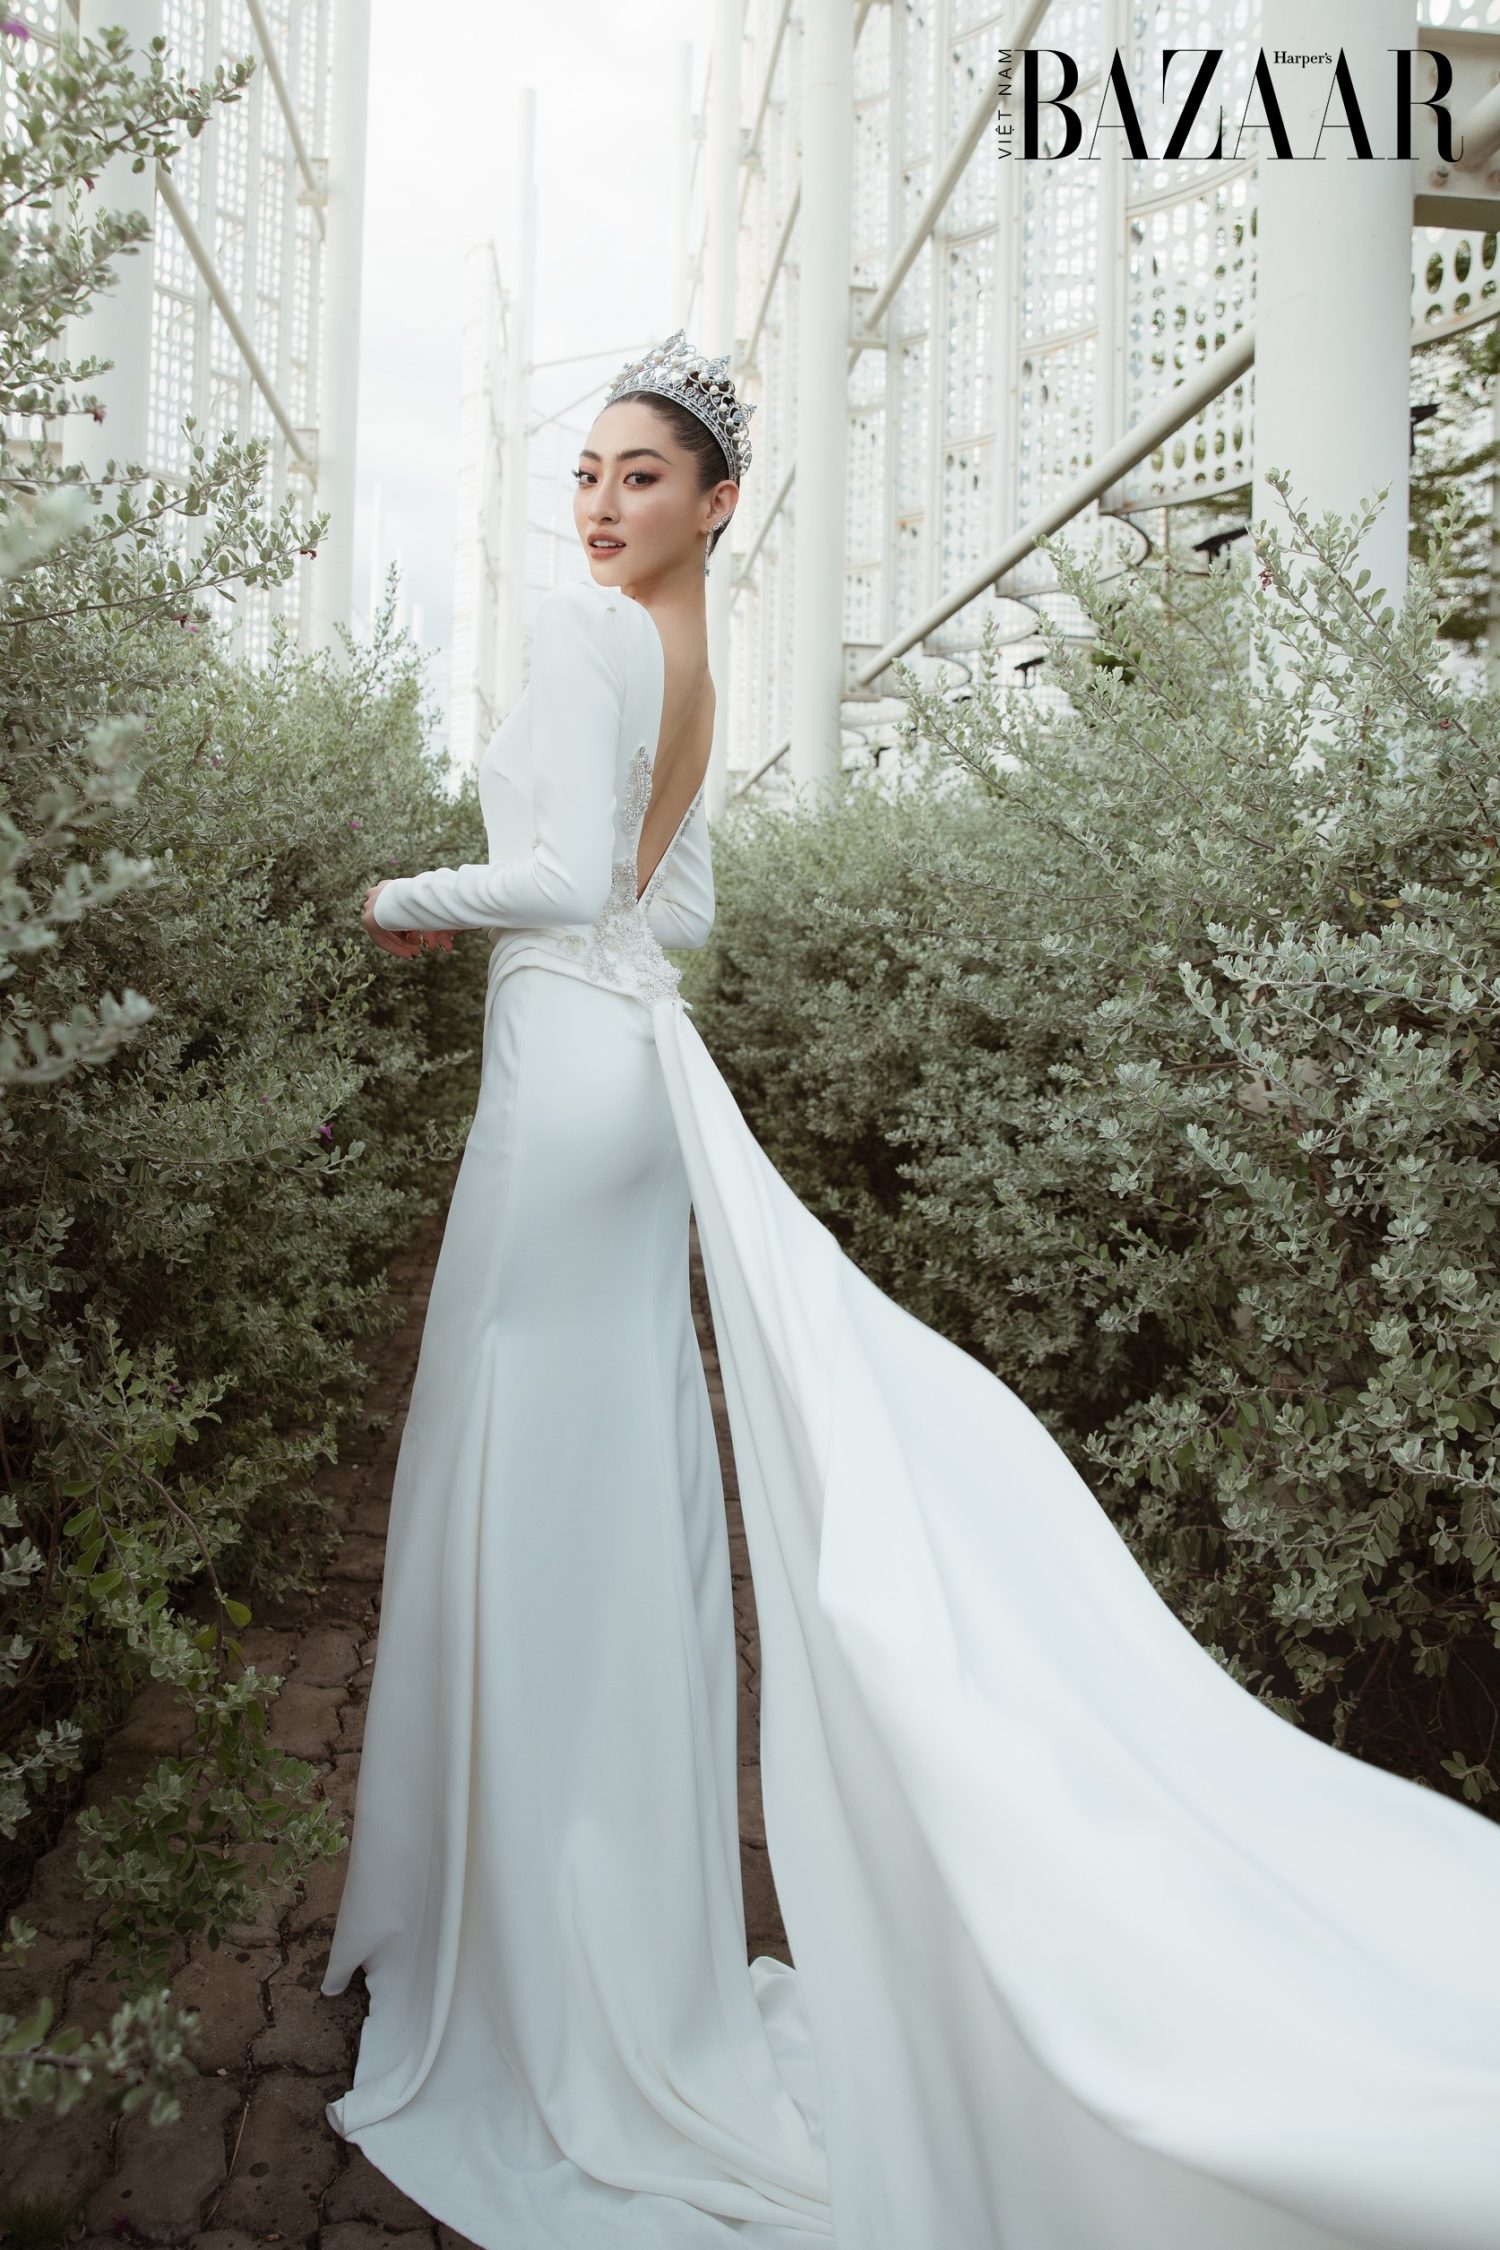 Harper's Bazaar_Hoa hậu Lương Thùy Linh mặc đầm cưới_05